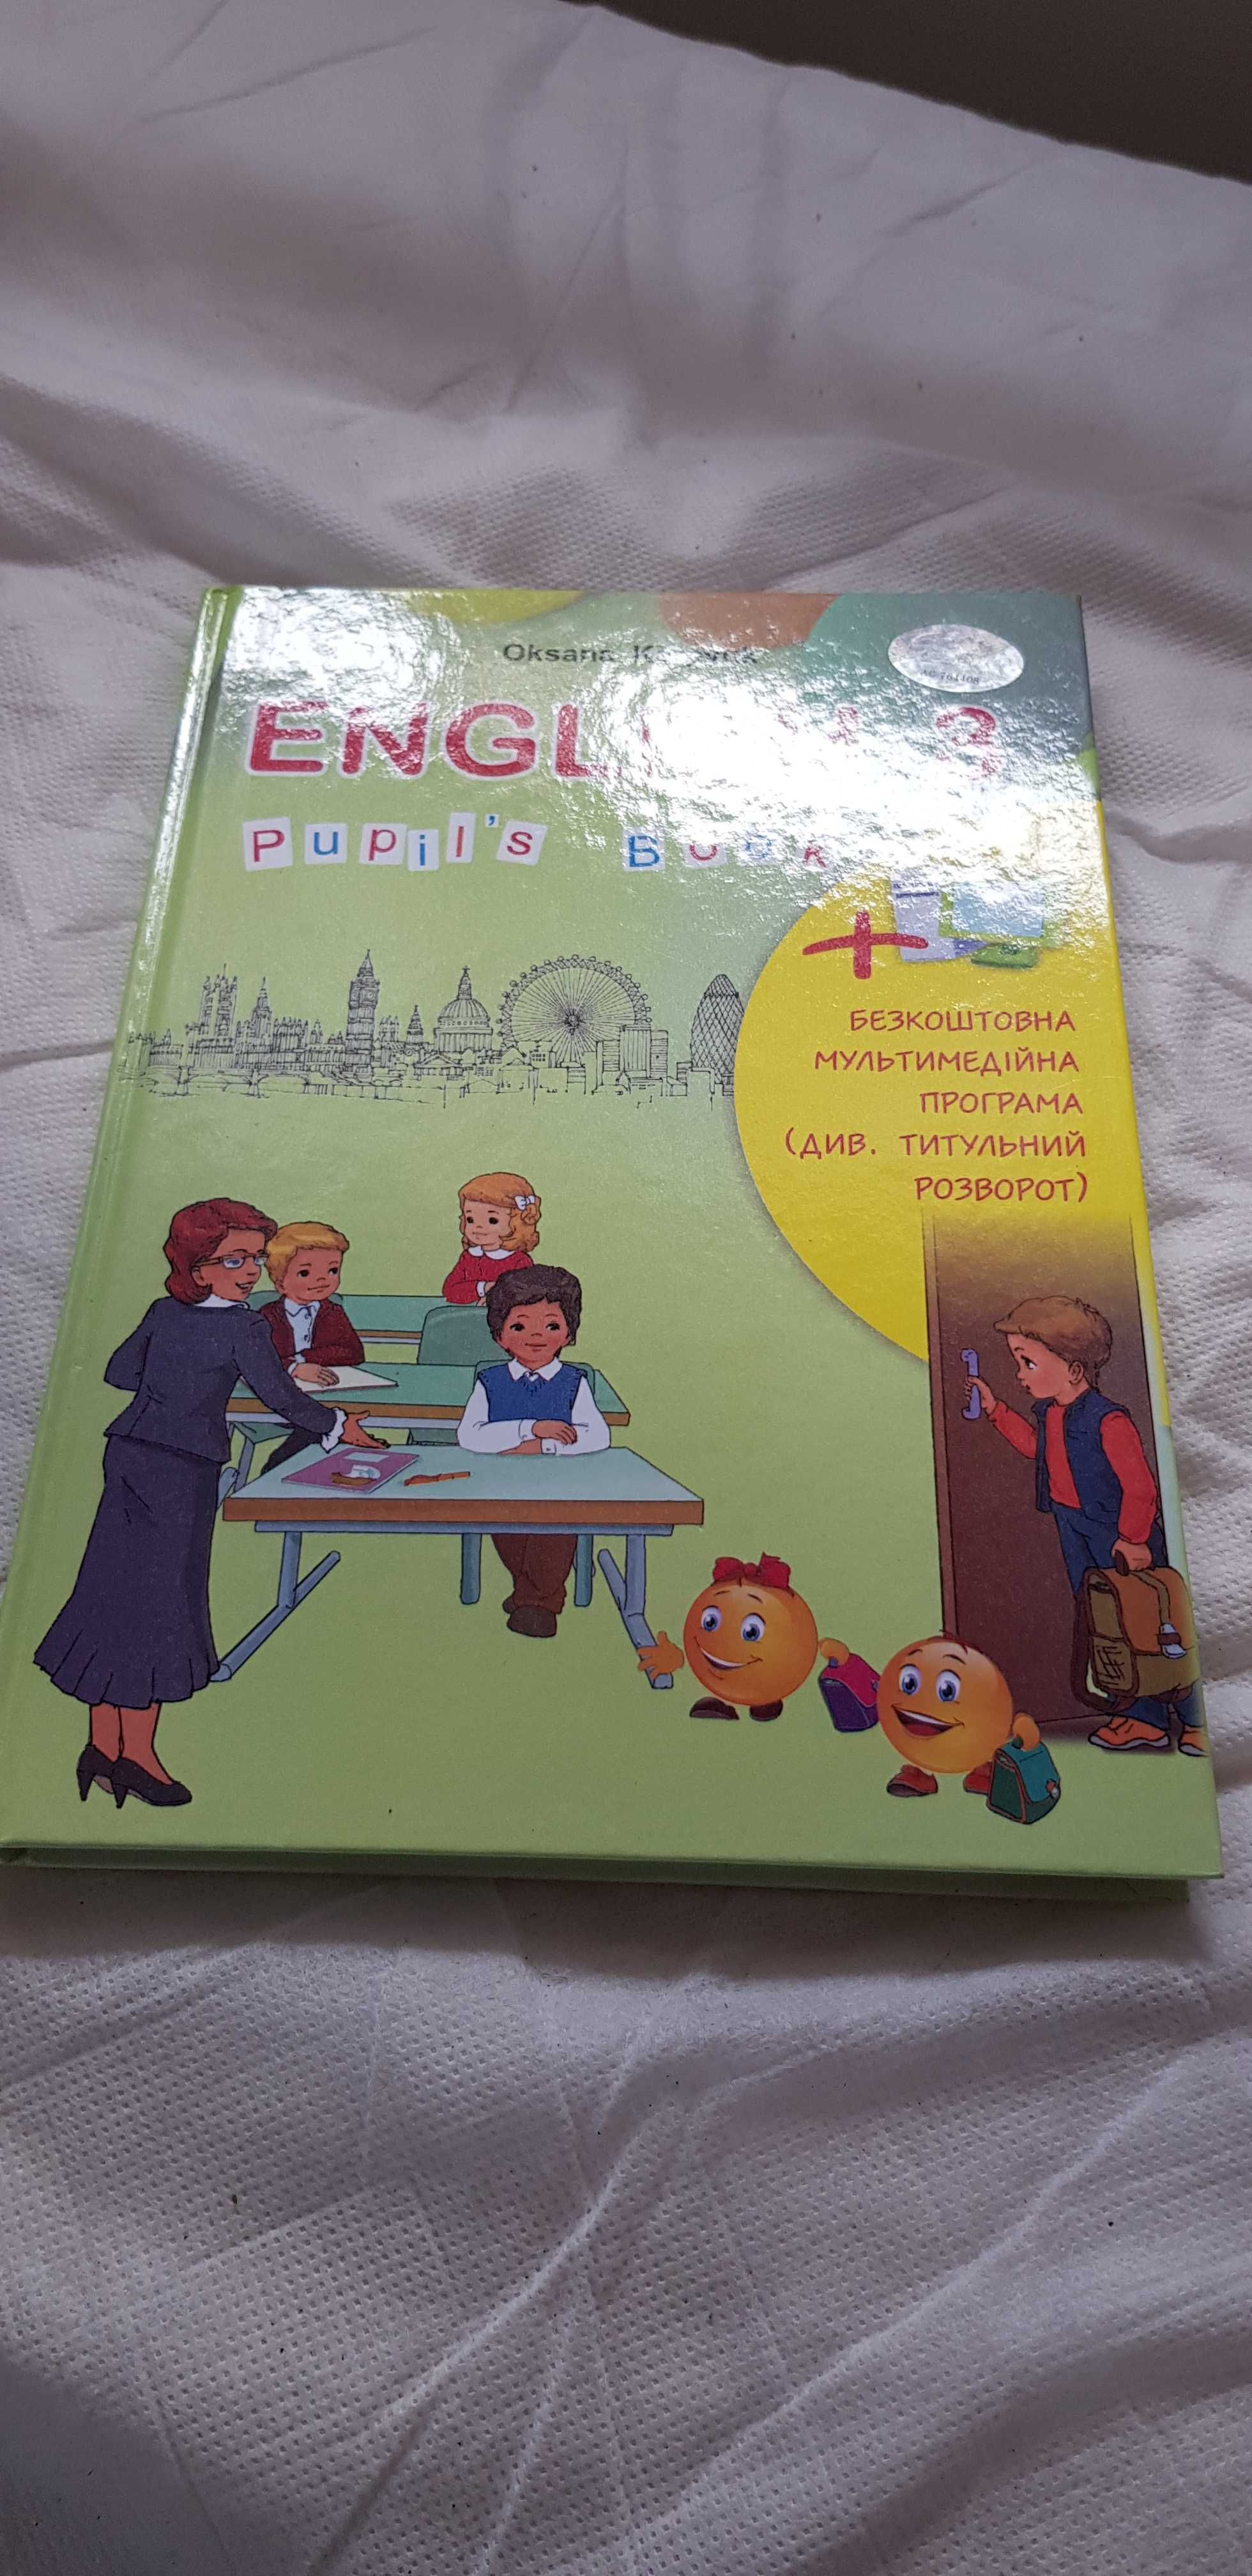 Карпюк 2018 English 3 pupils book